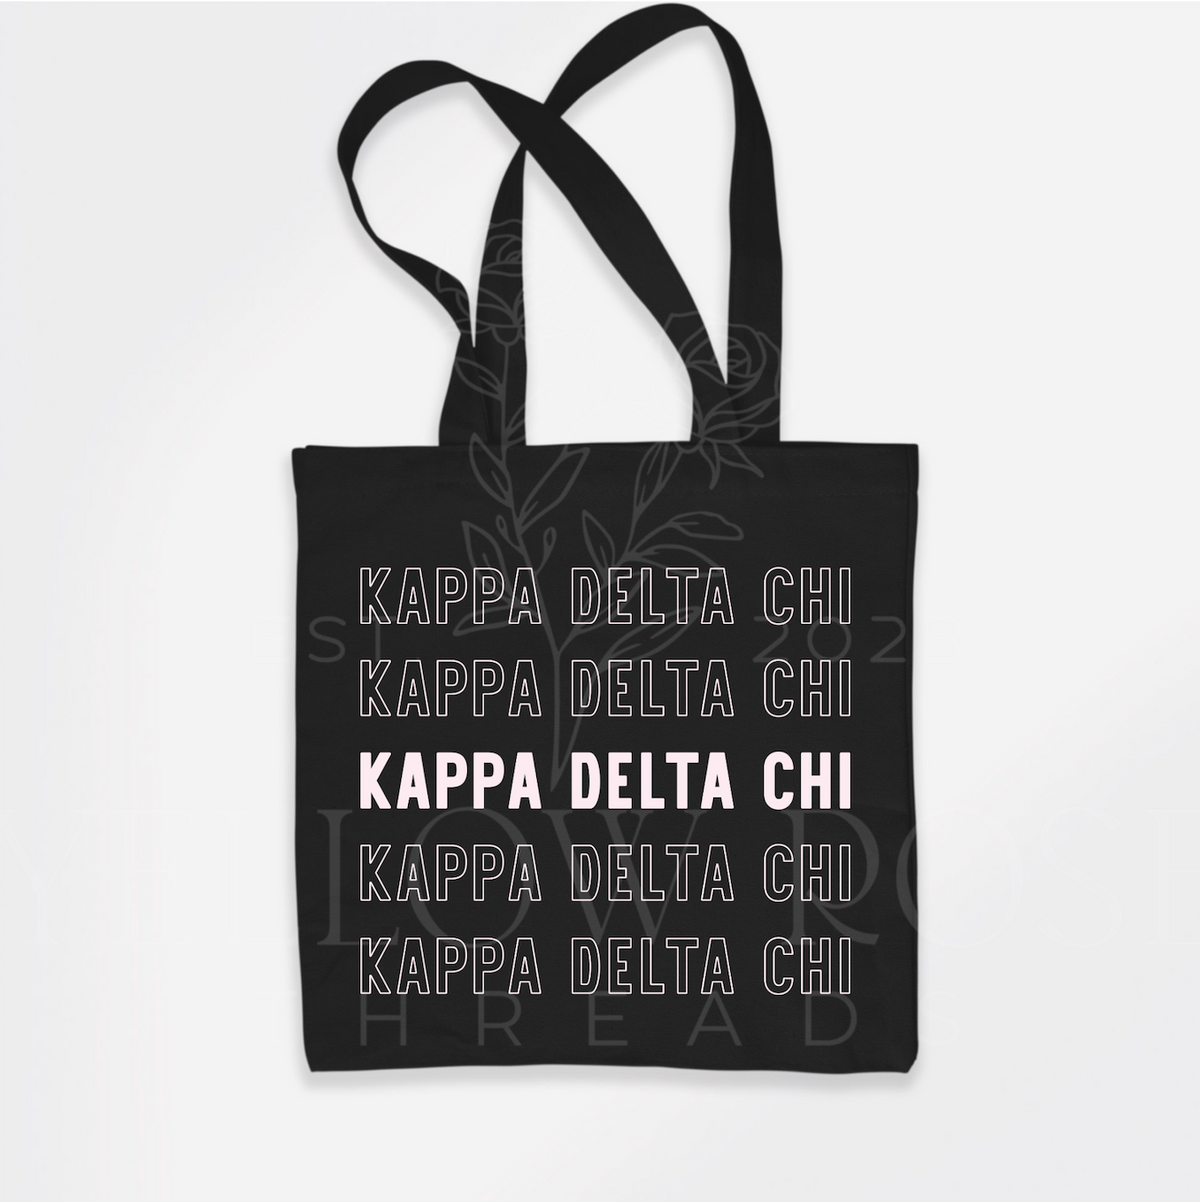 KDChi Black Off White Design Tote Bag